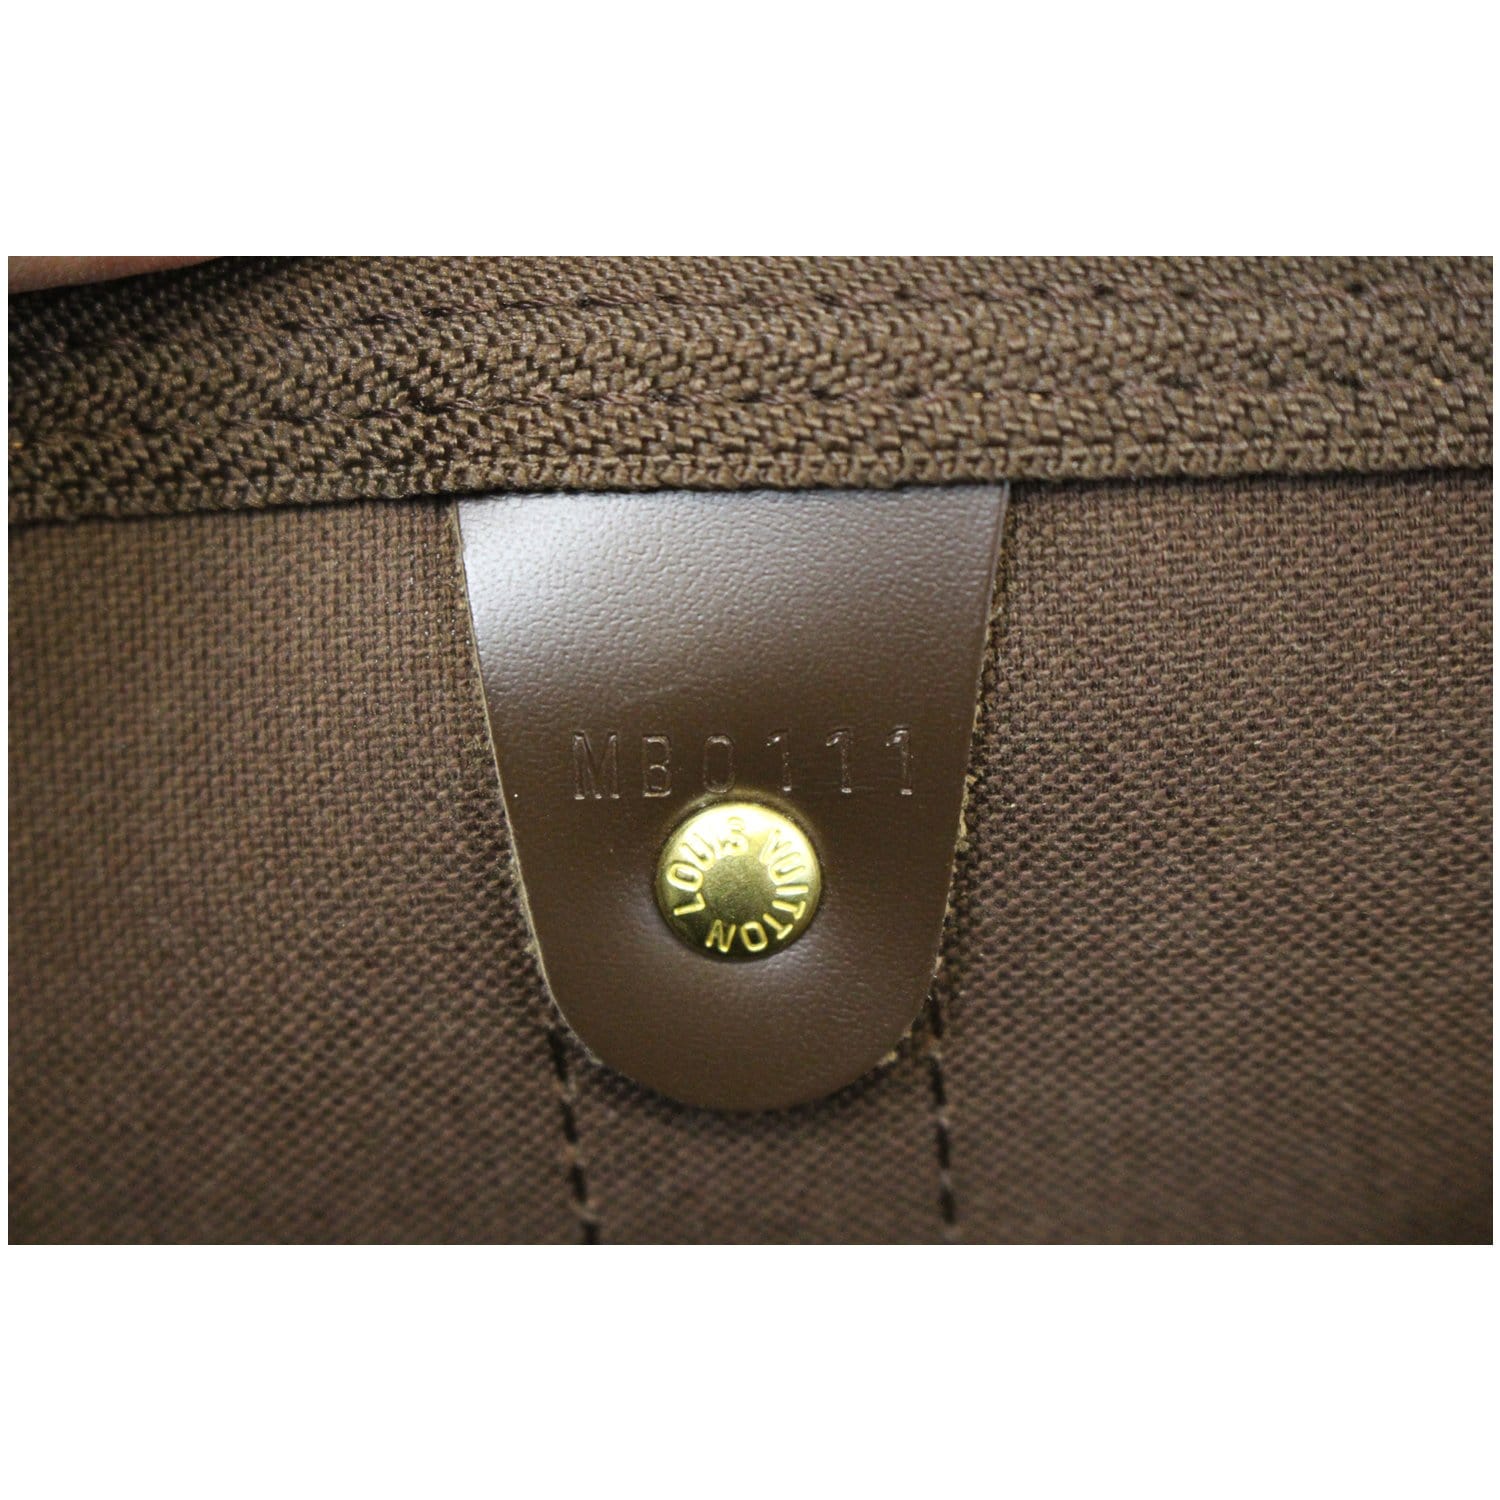 Louis Vuitton Keepall Bandoulière 50 Boston Bag(Silver)